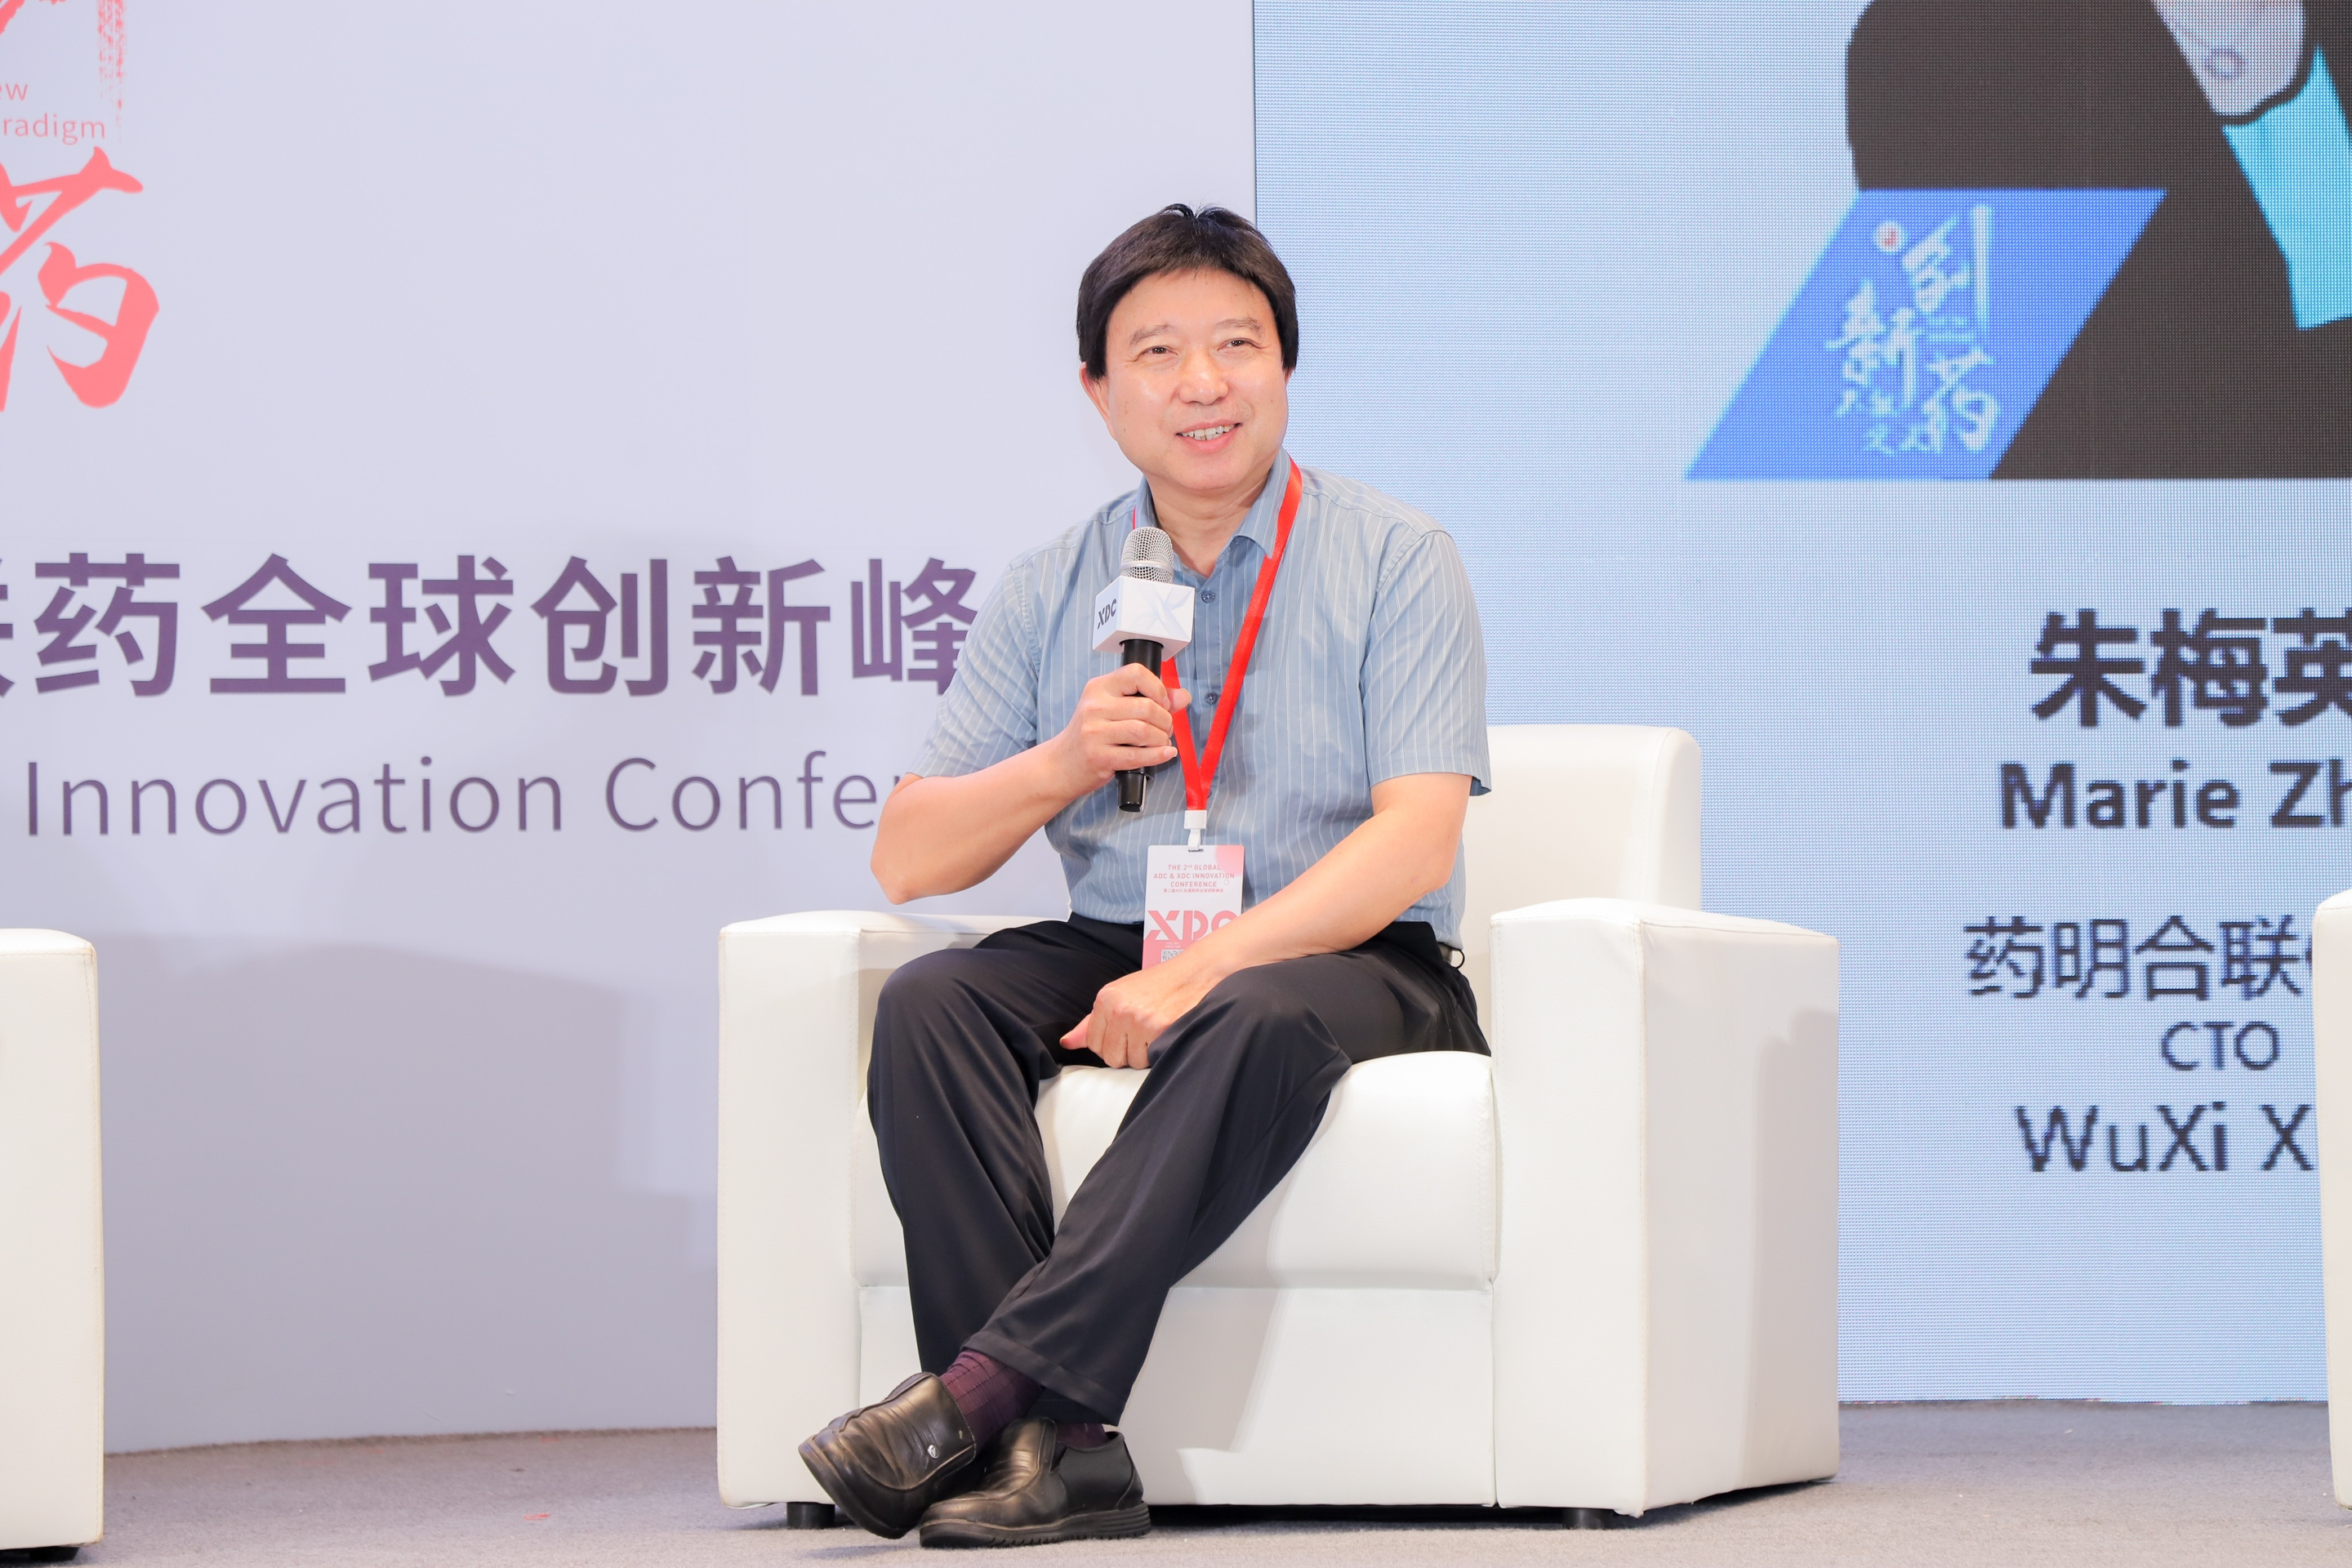 赵永新博士受邀出席第二届ADC及偶联药全球创新峰会